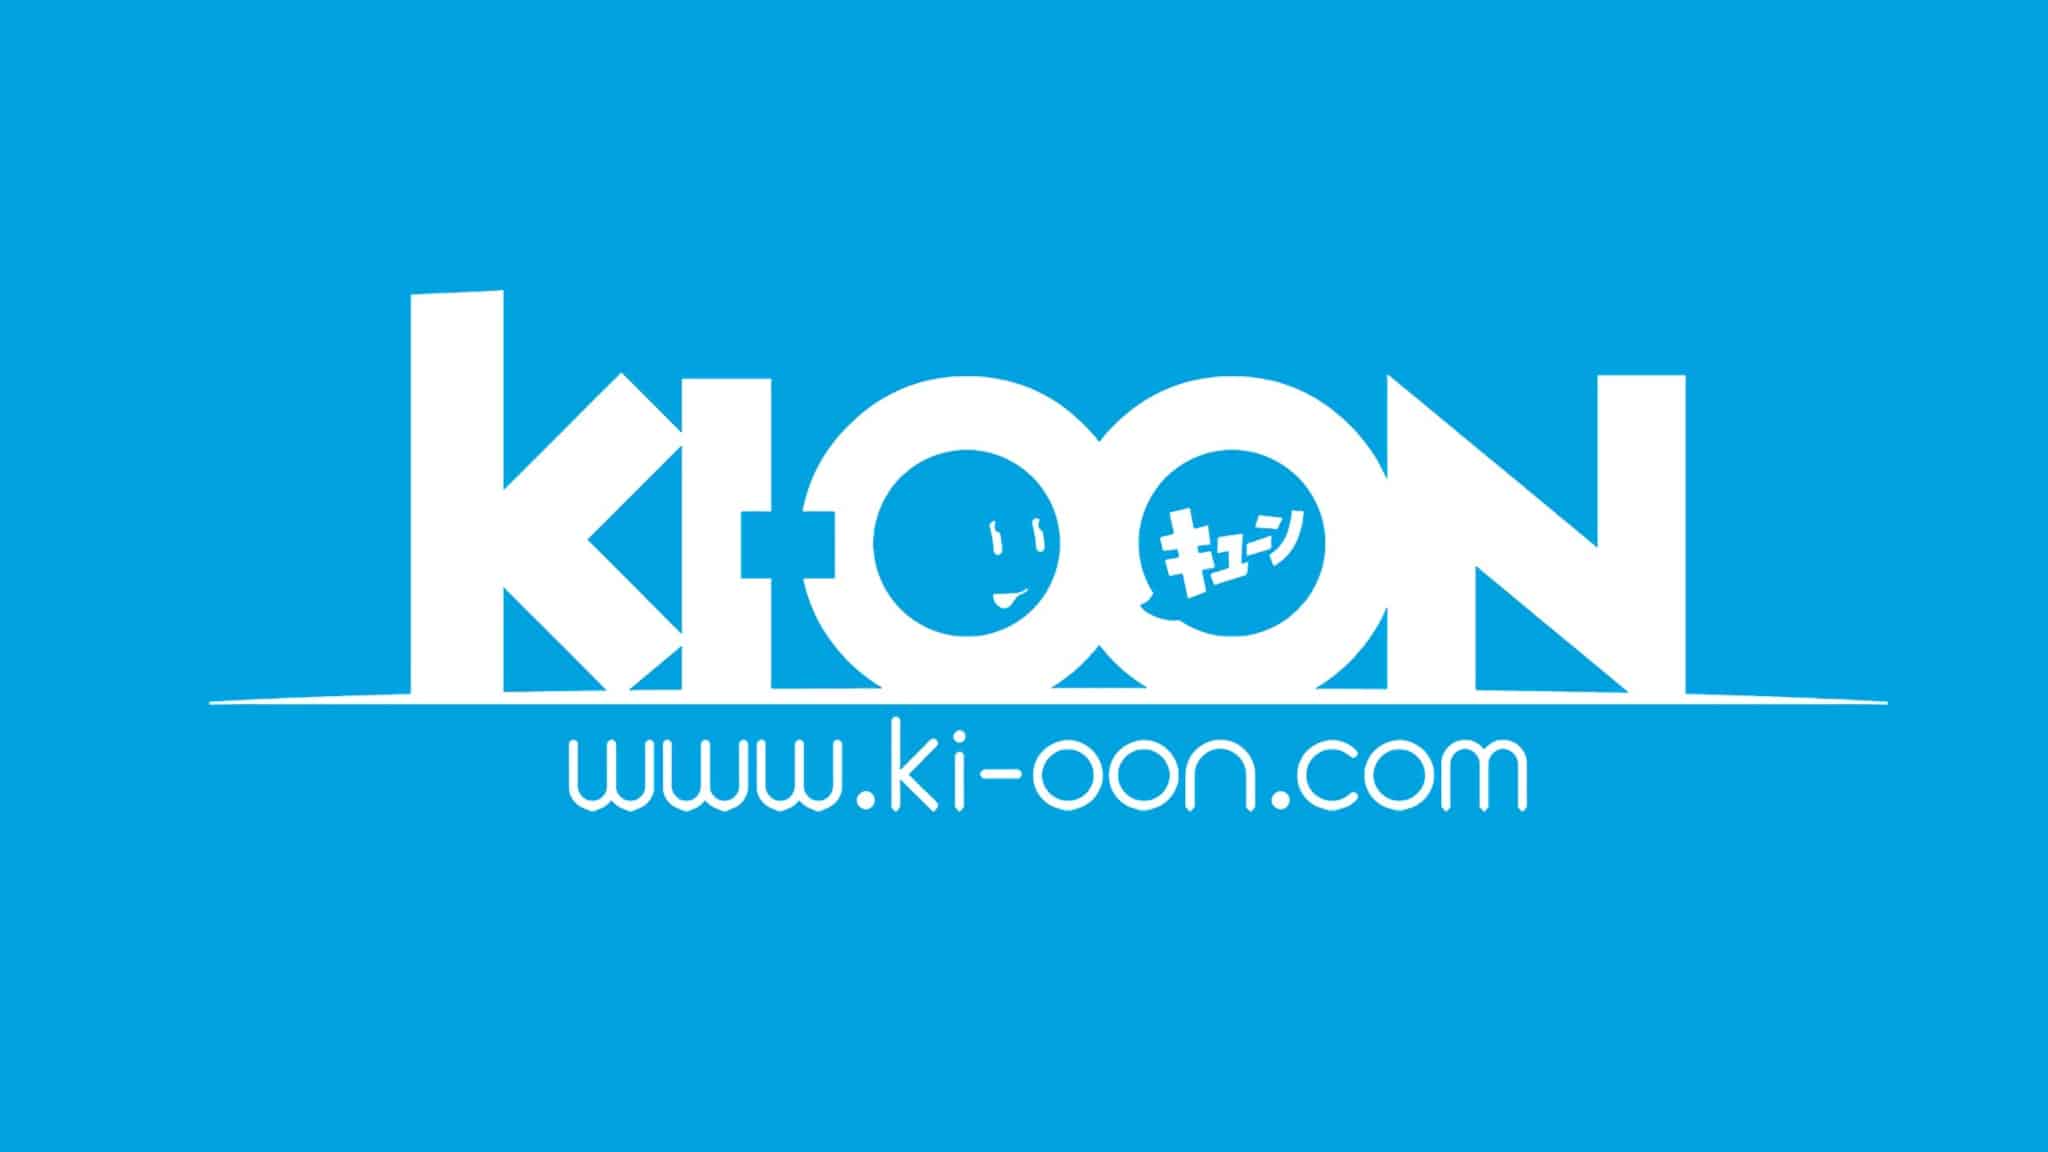 Annonce augmentation prix manga chez Ki-oon en 2023